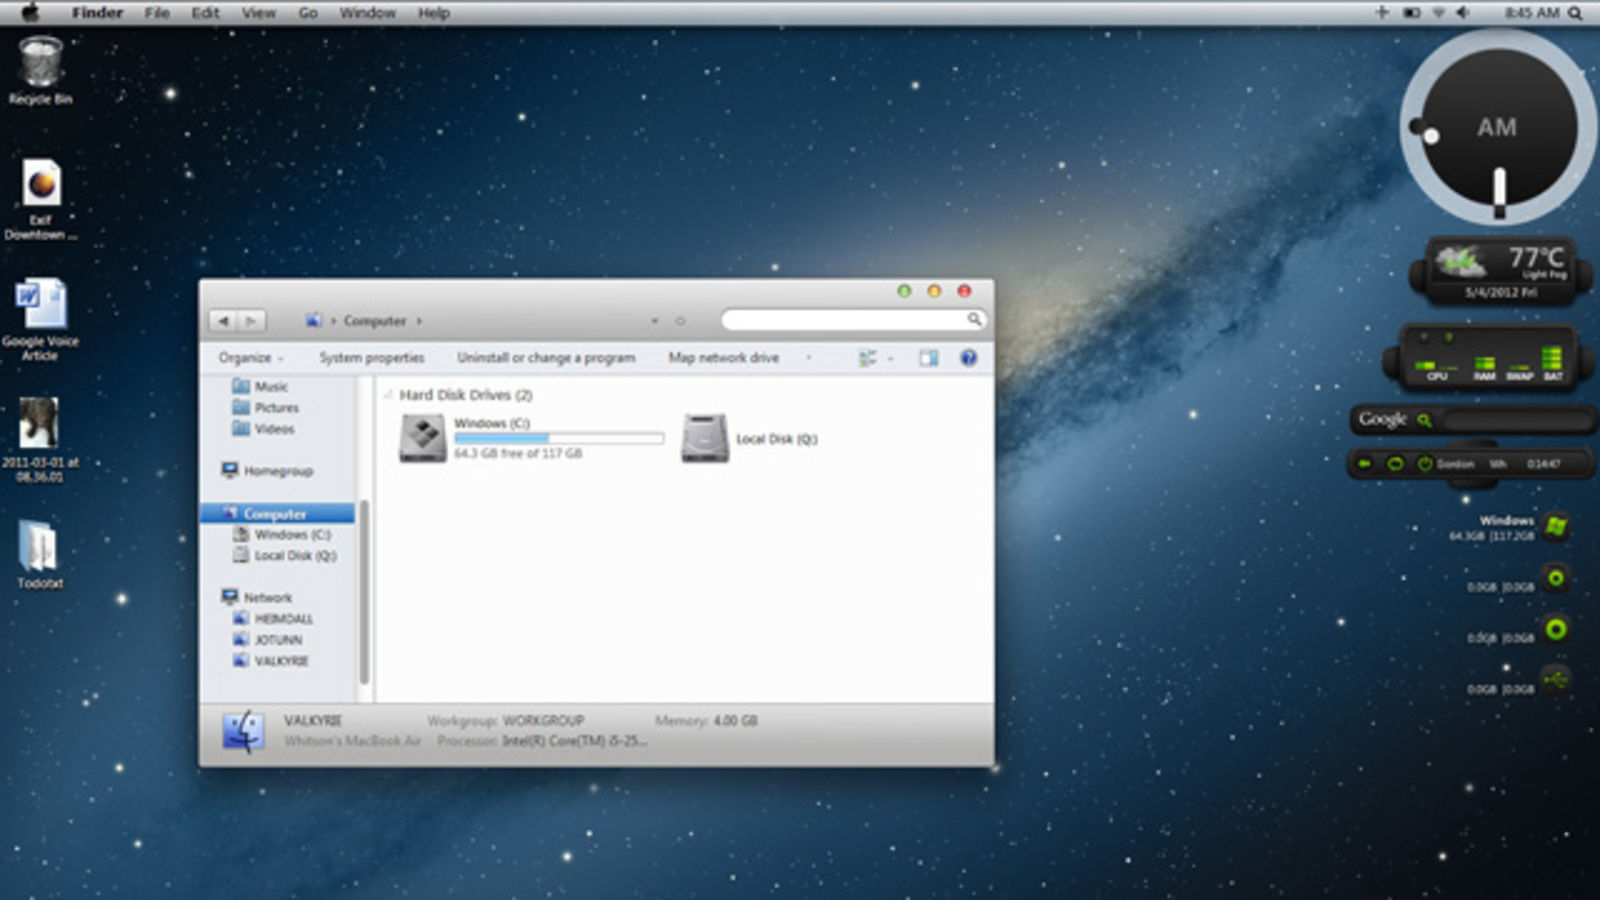 mac os x mountain lion theme for windows 7 download